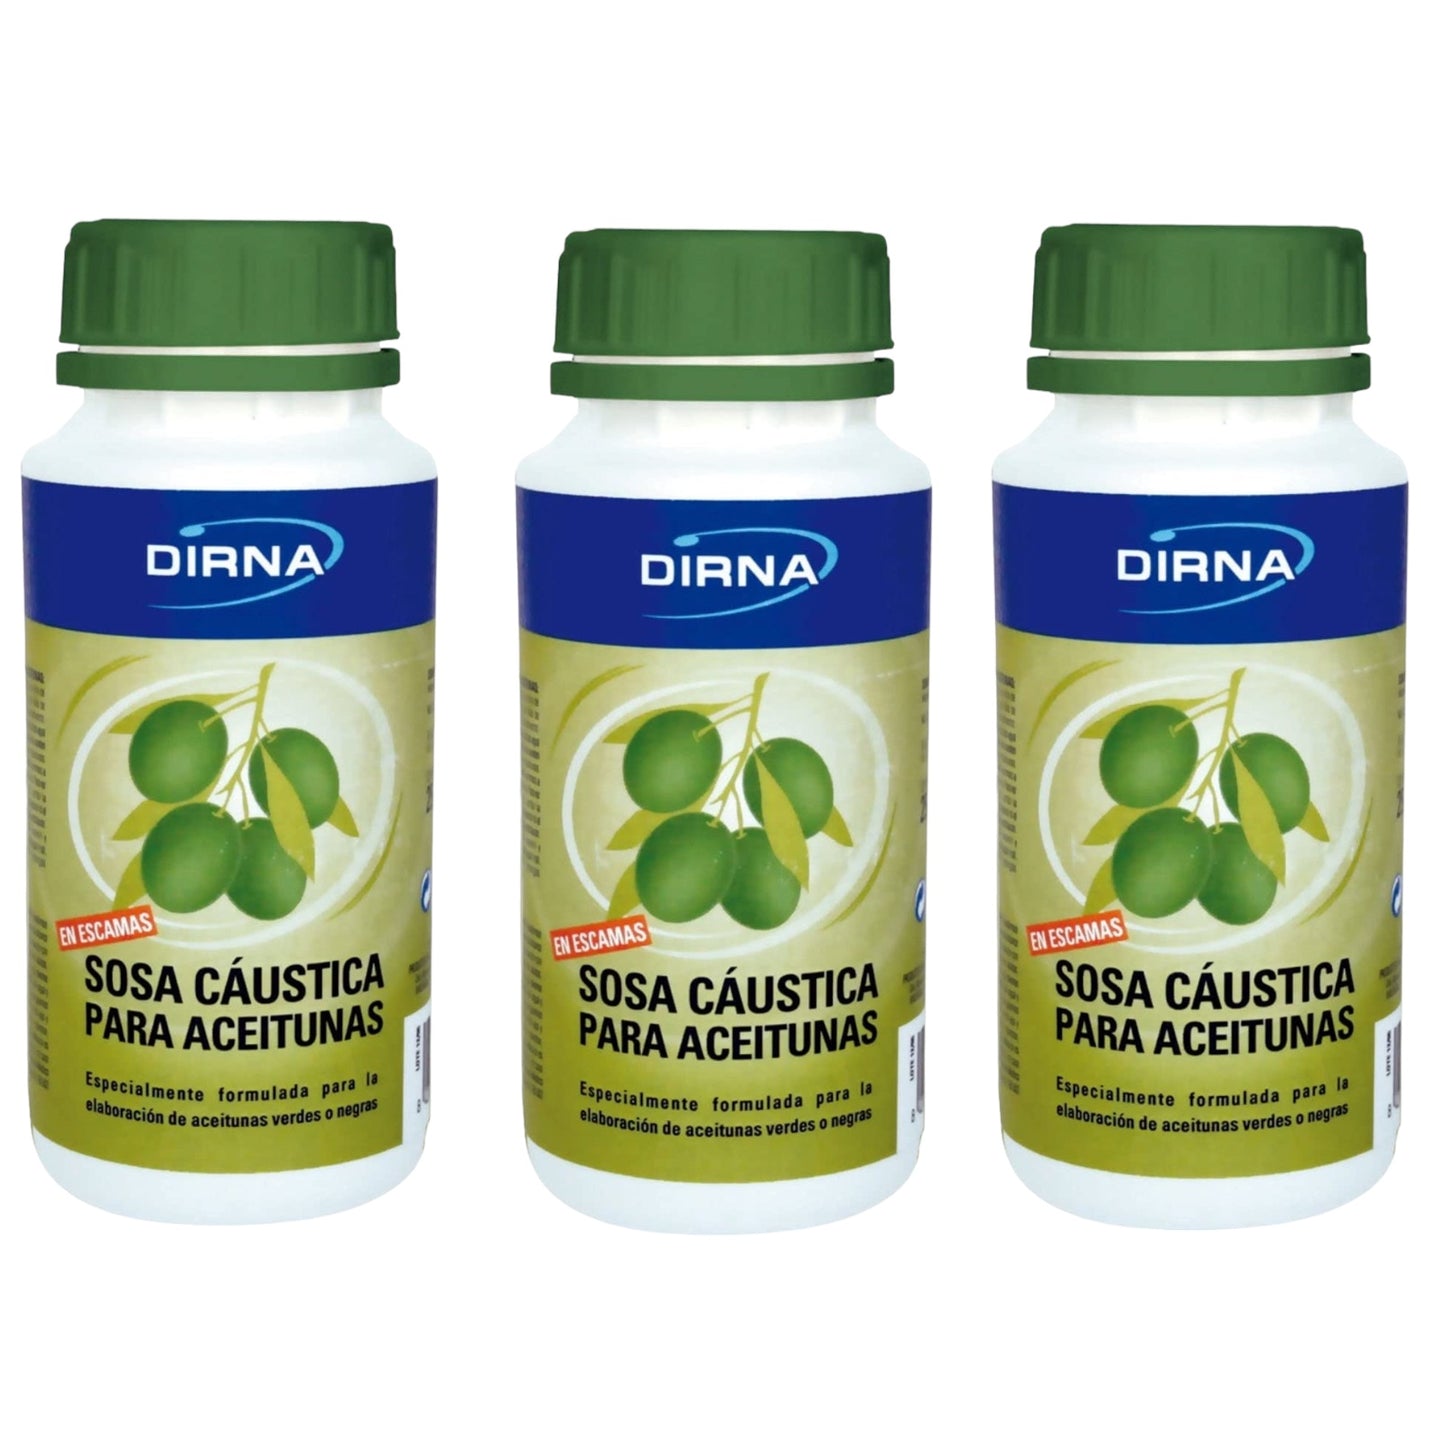 DIRNA Sosa Cáustica para la Elaboración de Aceitunas Tarro 250 gr Pack 3